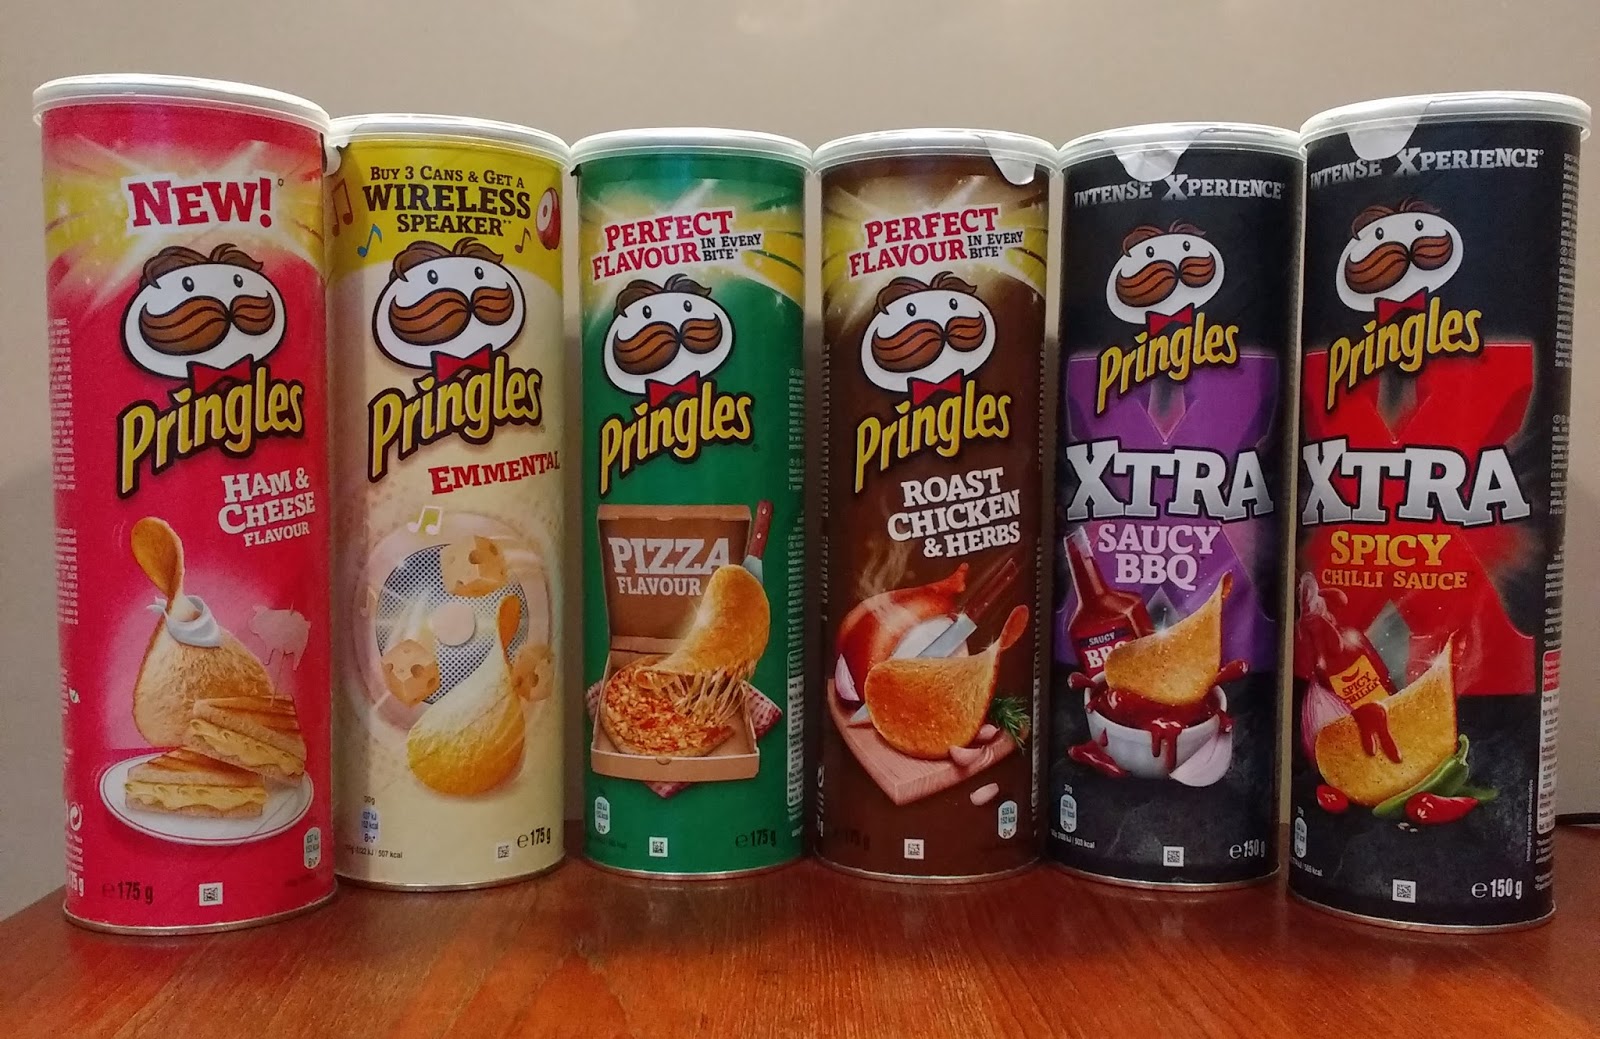 JamMK: Making use of Pringles tubes